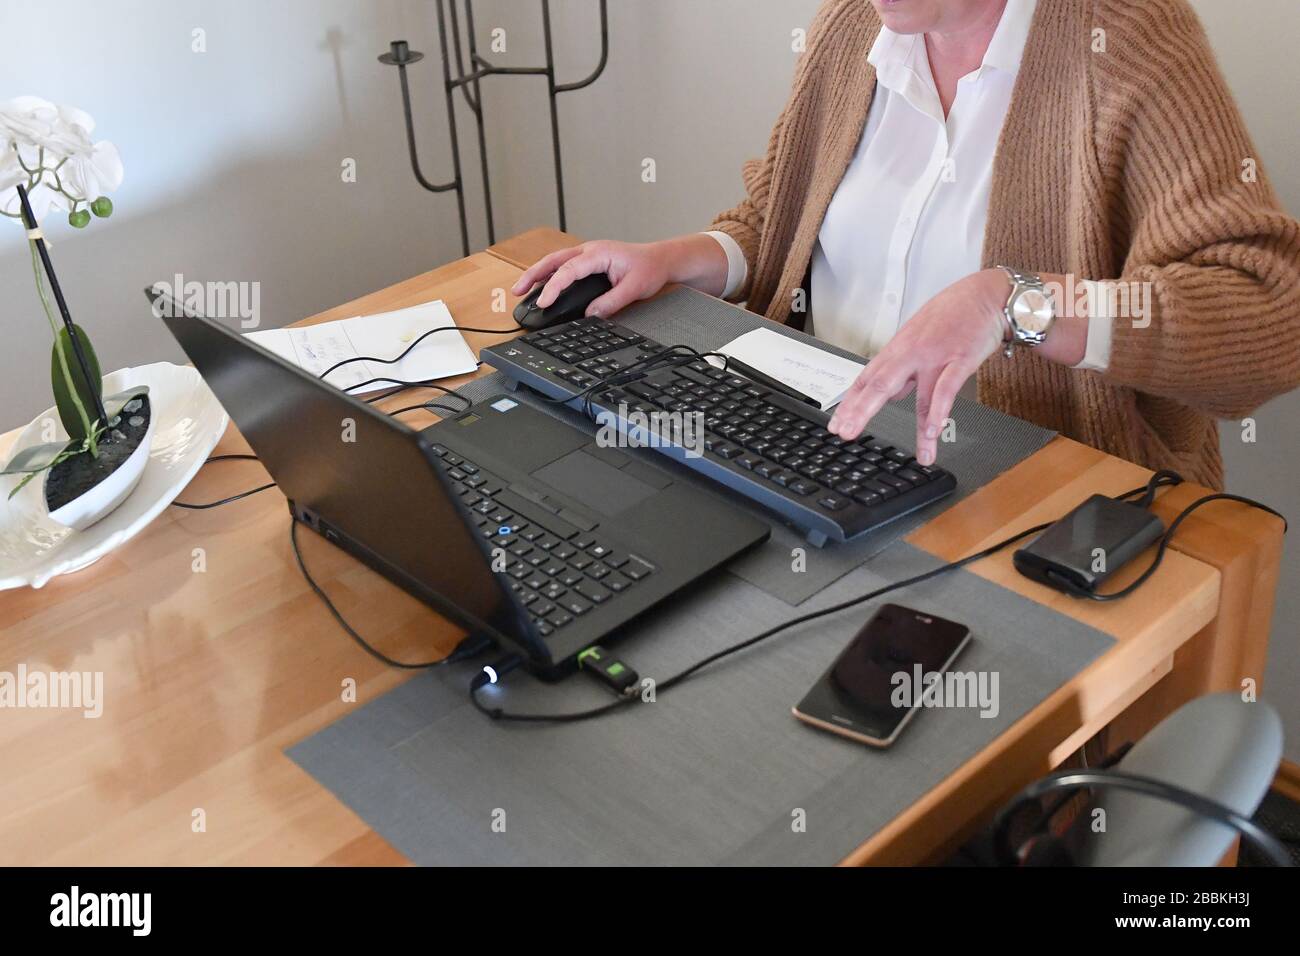 Работа с готовой компьютерной моделью. Пожилые в интернете. Работа. Поиск работы. Интернет-кафе для пожилых.